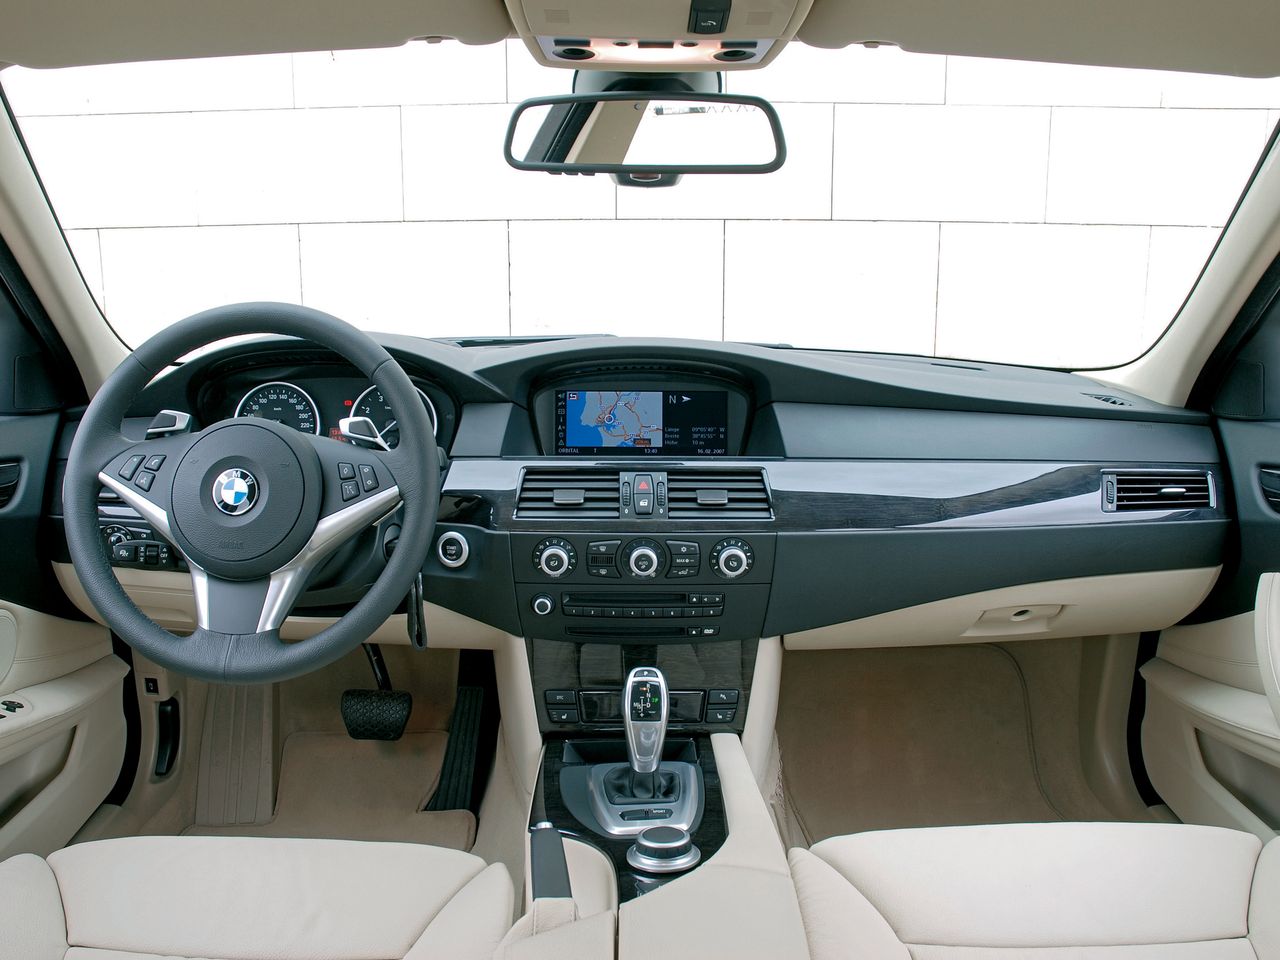 Wnętrze BMW Serii 5 (E60) jest wysokiej jakości i nawet po dużym przebiegu może być świetnie utrzymane. To utrudnia weryfikację.